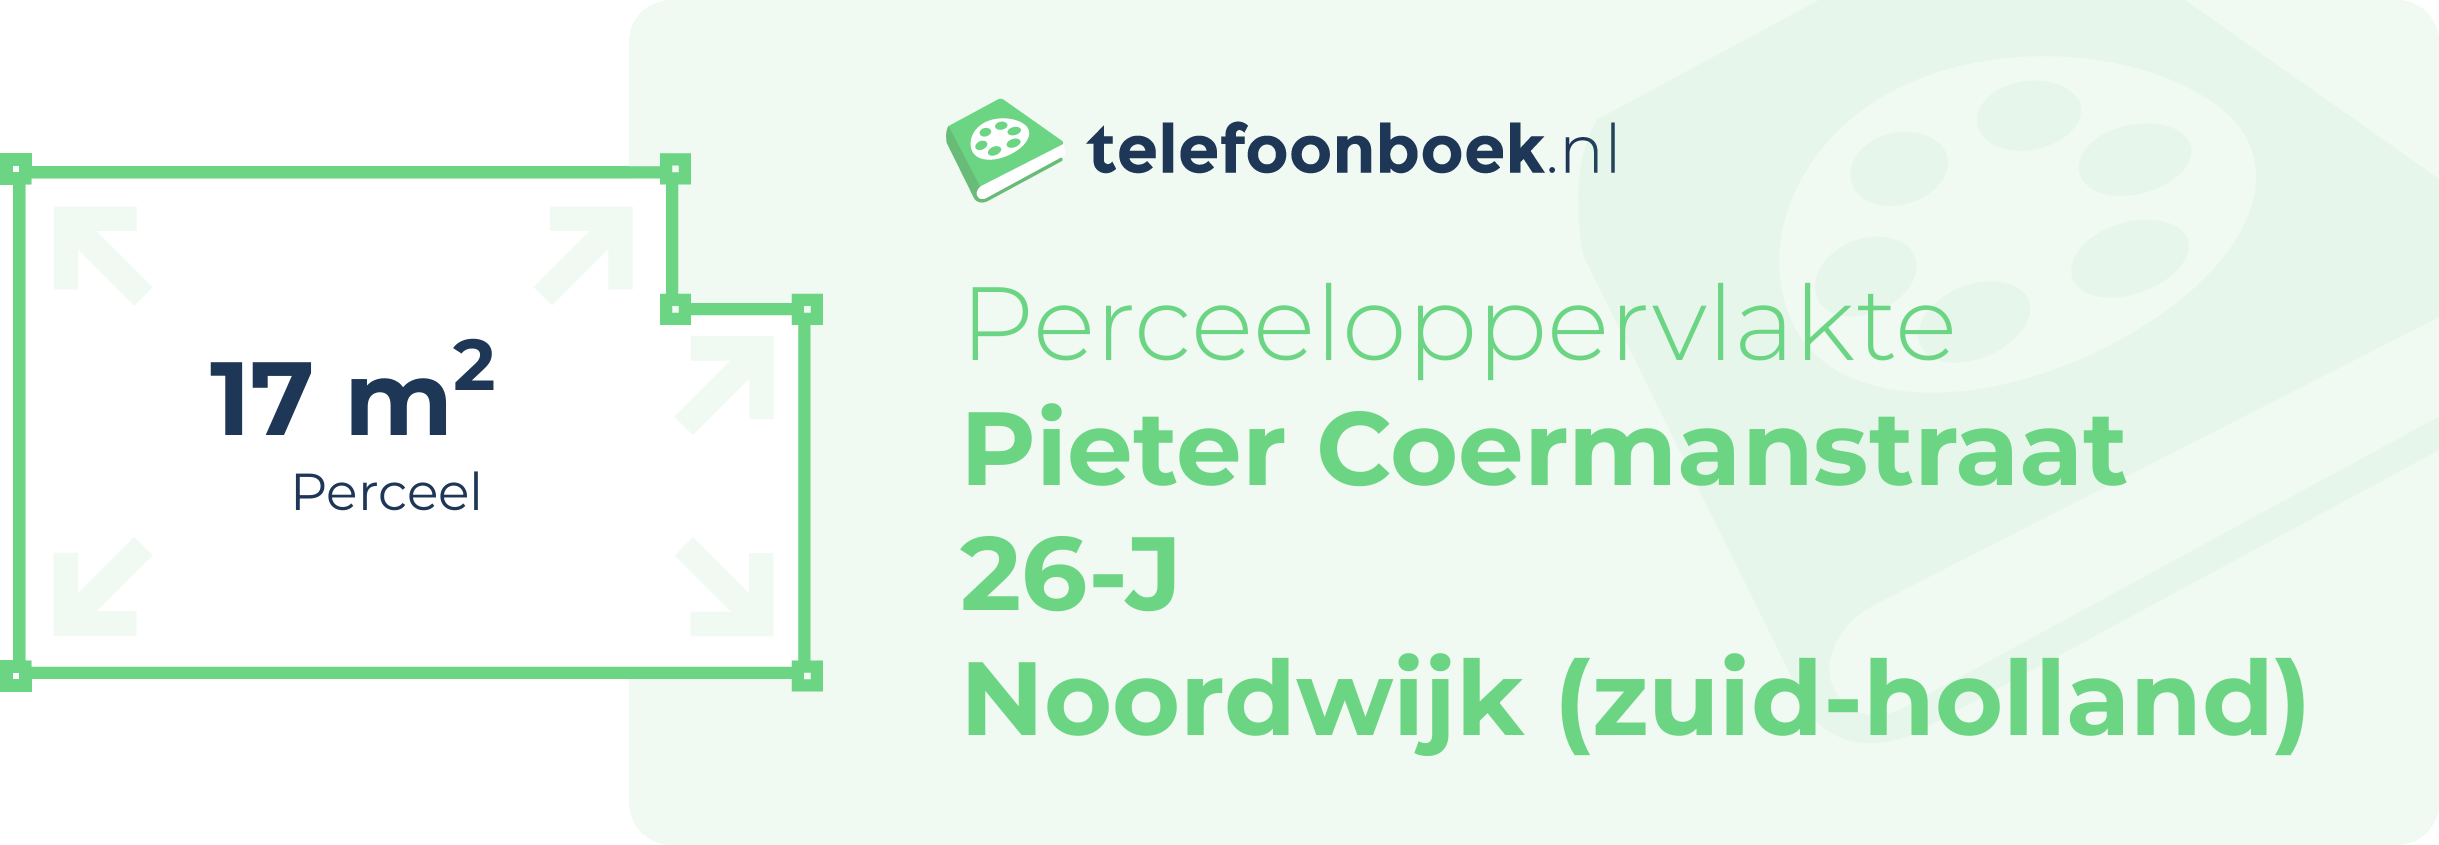 Perceeloppervlakte Pieter Coermanstraat 26-J Noordwijk (Zuid-Holland)